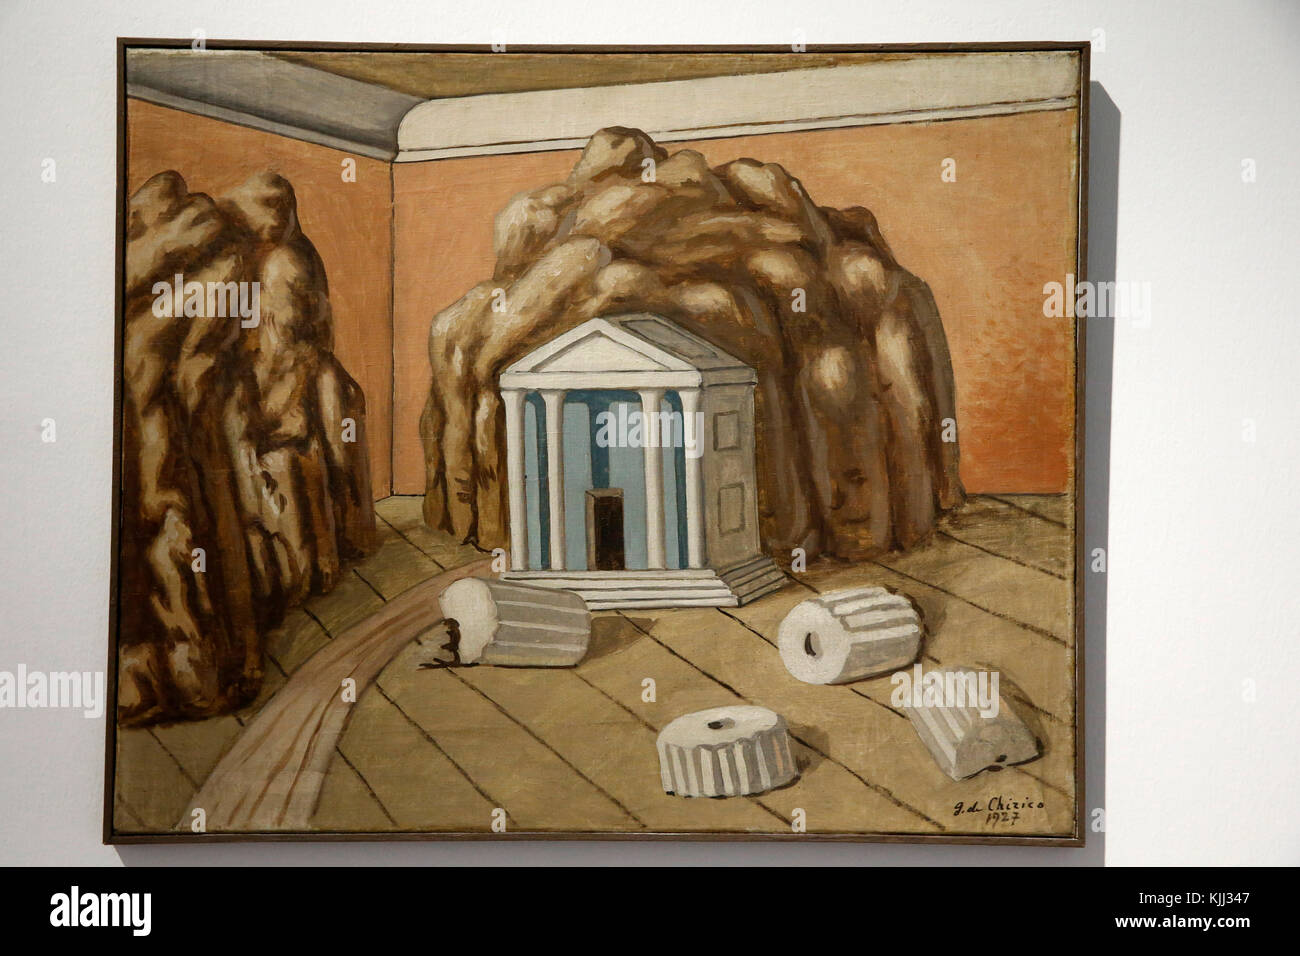 Musée d'Art Moderne, Rome. Giorgio de Chirico. Il tempio nella stanza. 1927. Cette image n'est pas tombŽe dans le domaine public. Il faut obligatoir Banque D'Images